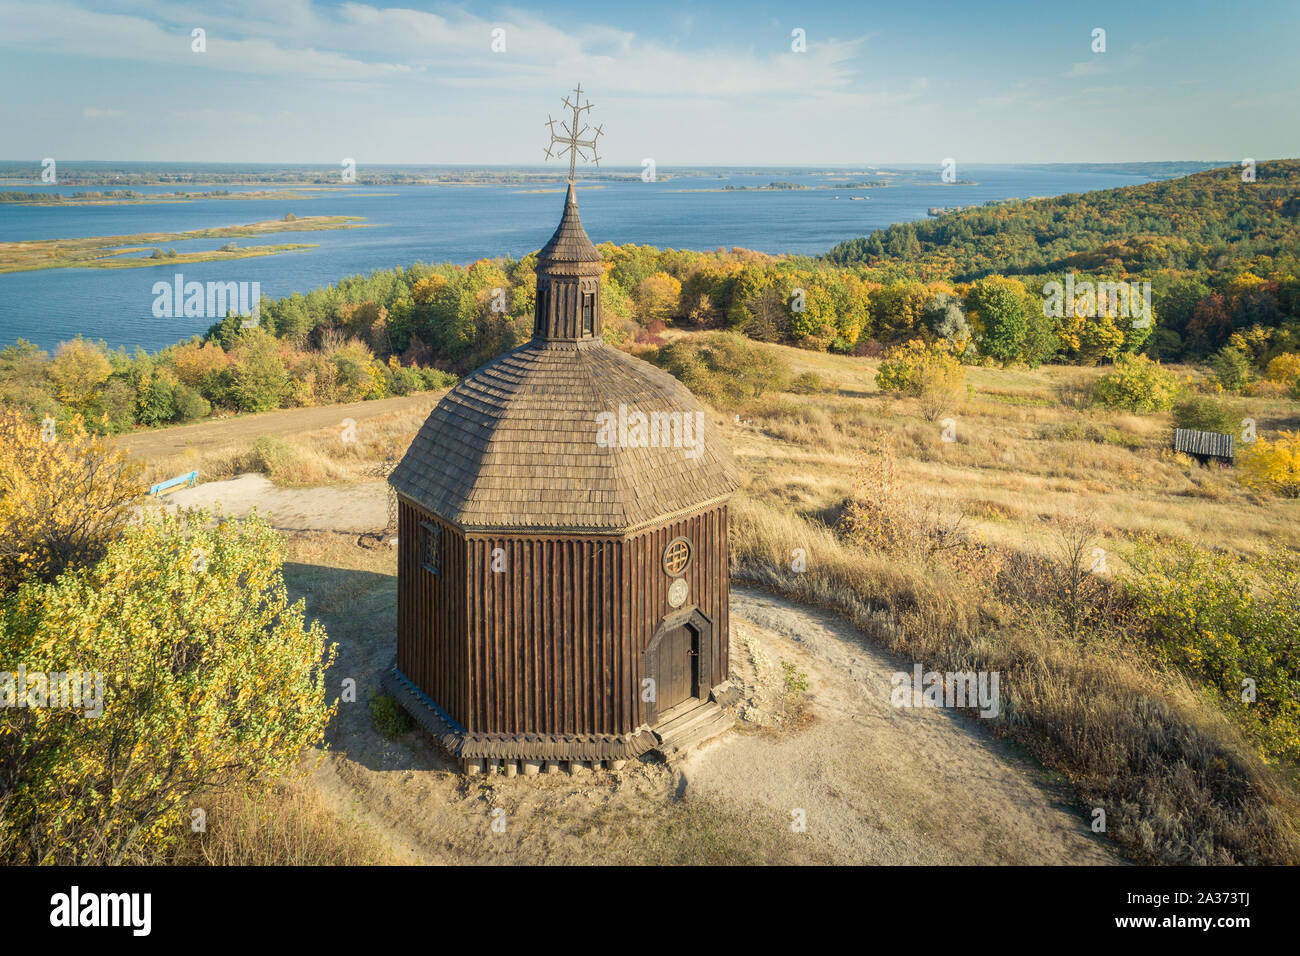 Antenne Landschaft mit einem kleinen hölzernen Kirche auf einem Hügel mit einem herrlichen Blick auf einem Fluss im Dneper Vitachov (Vytachov), Ukraine. Man Tagesausflüge rund um K Stockfoto